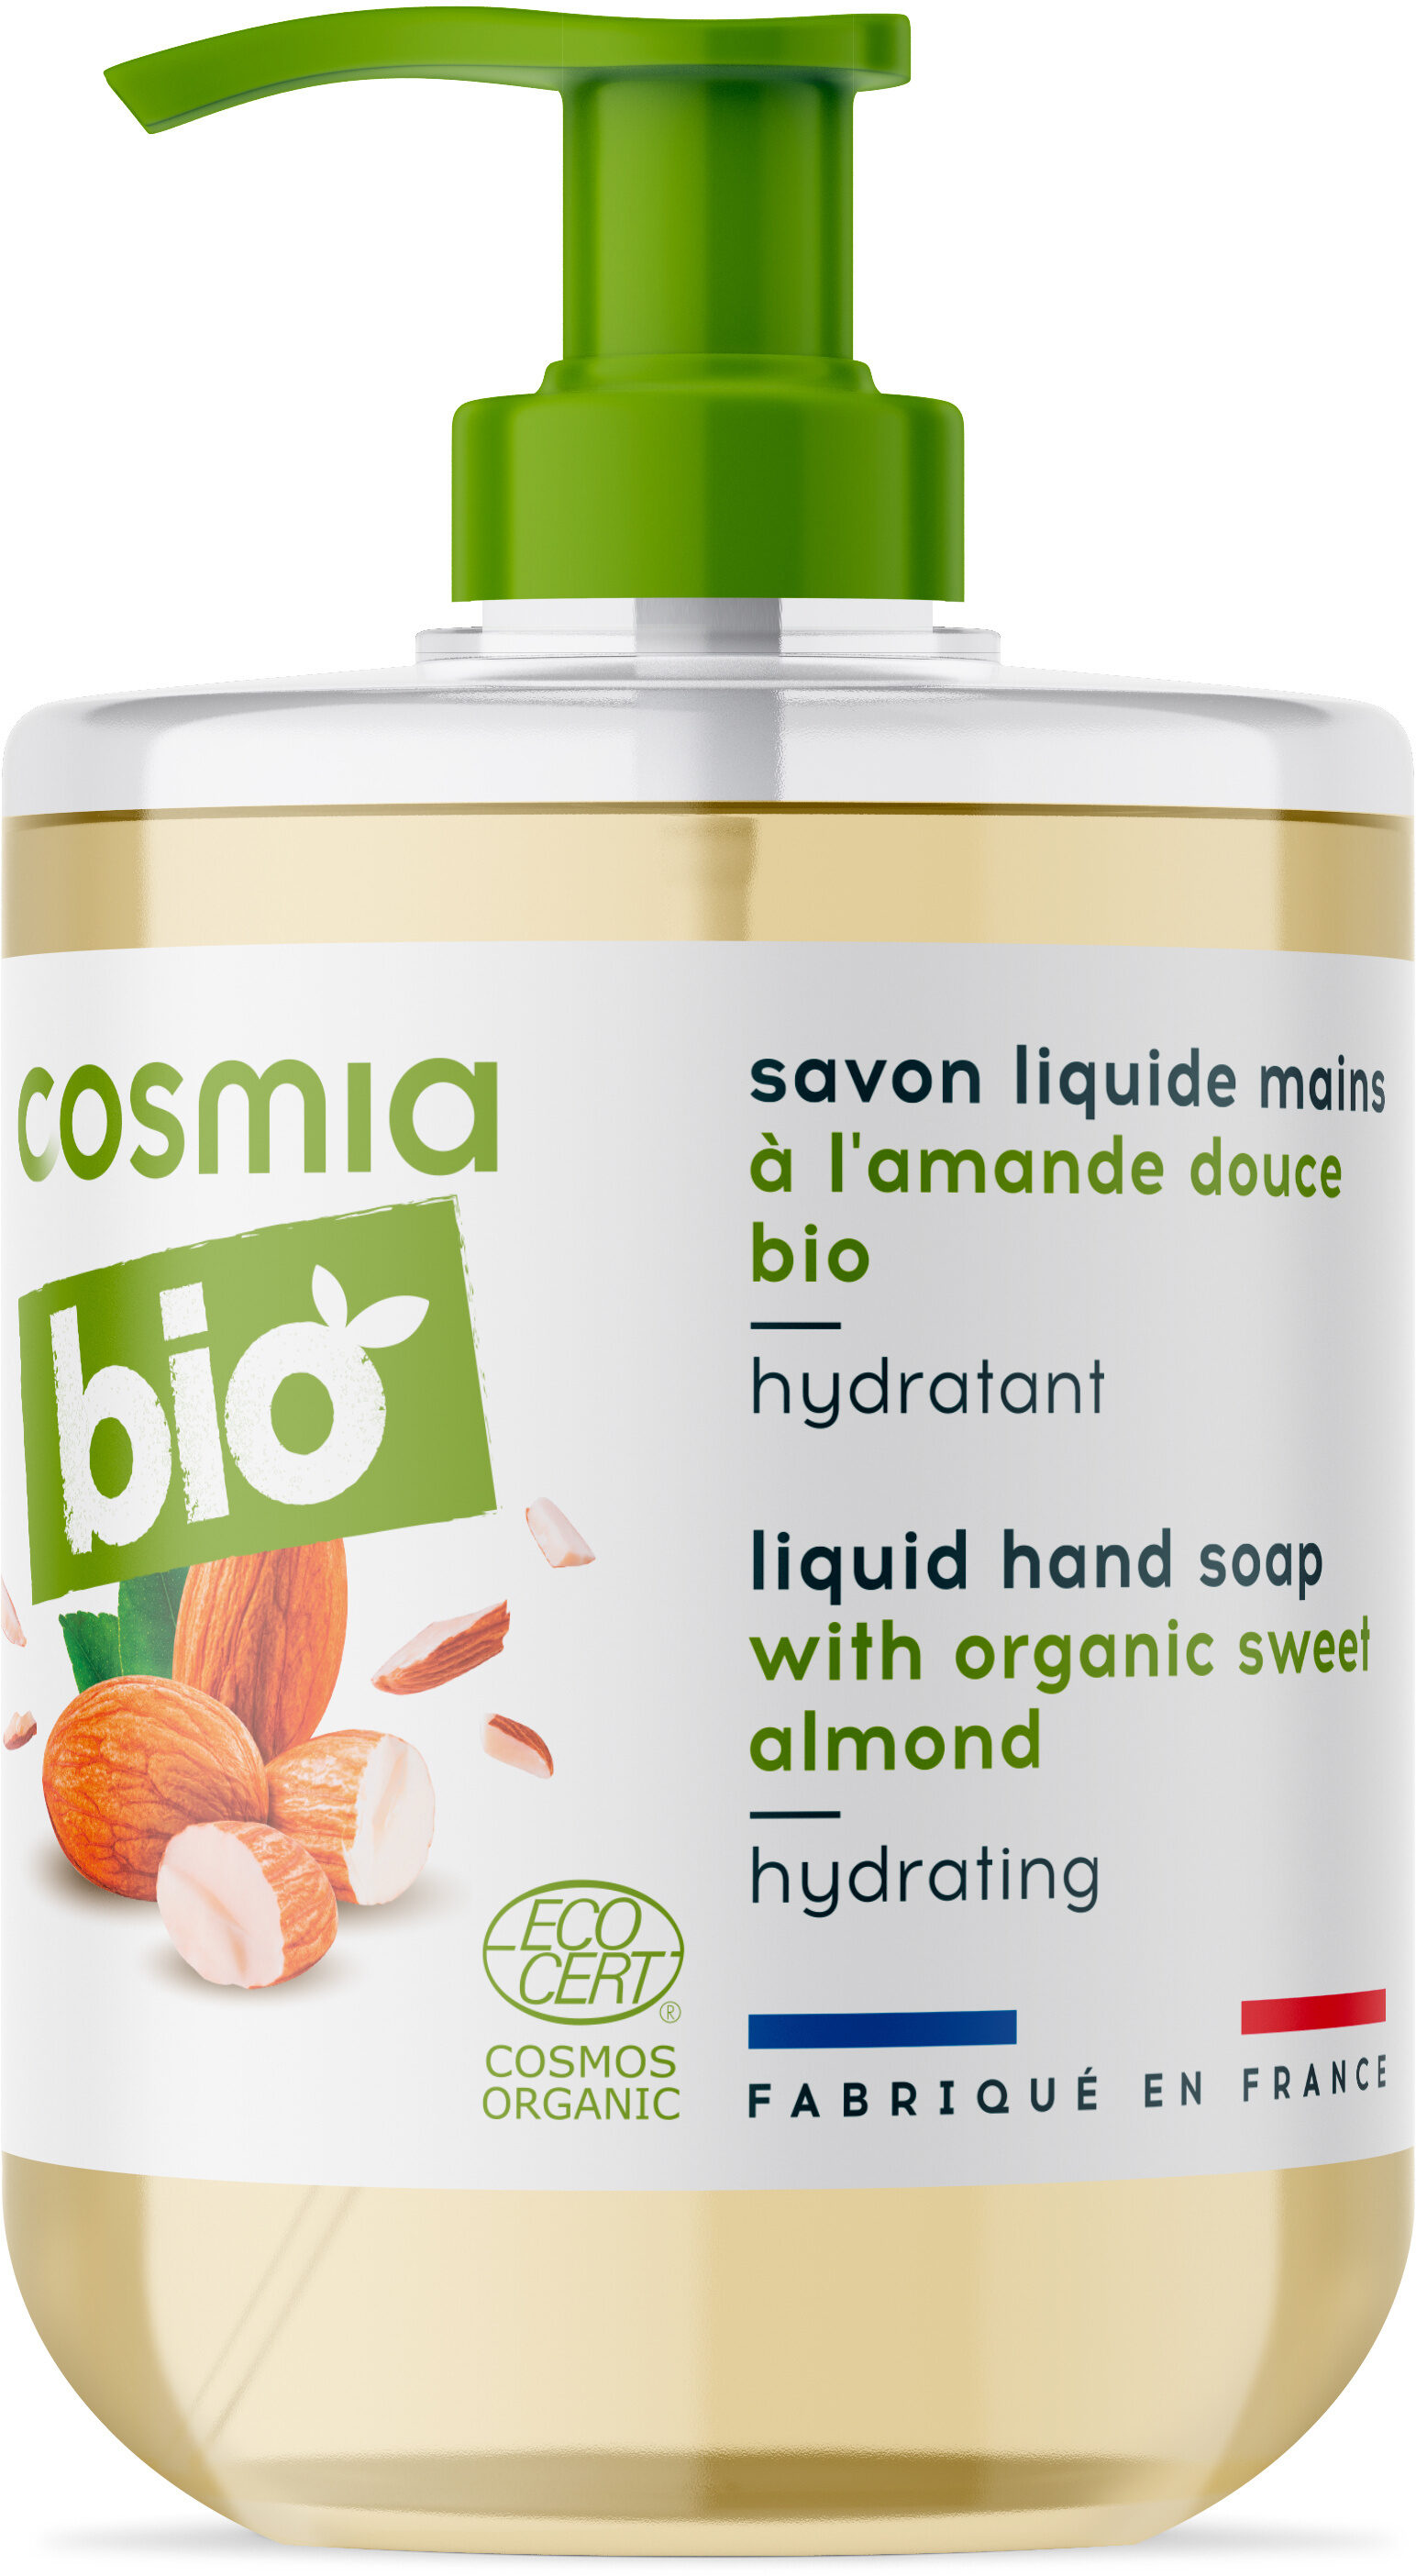 Bio savon liquide mains a l'amande douce bio - Produto - fr